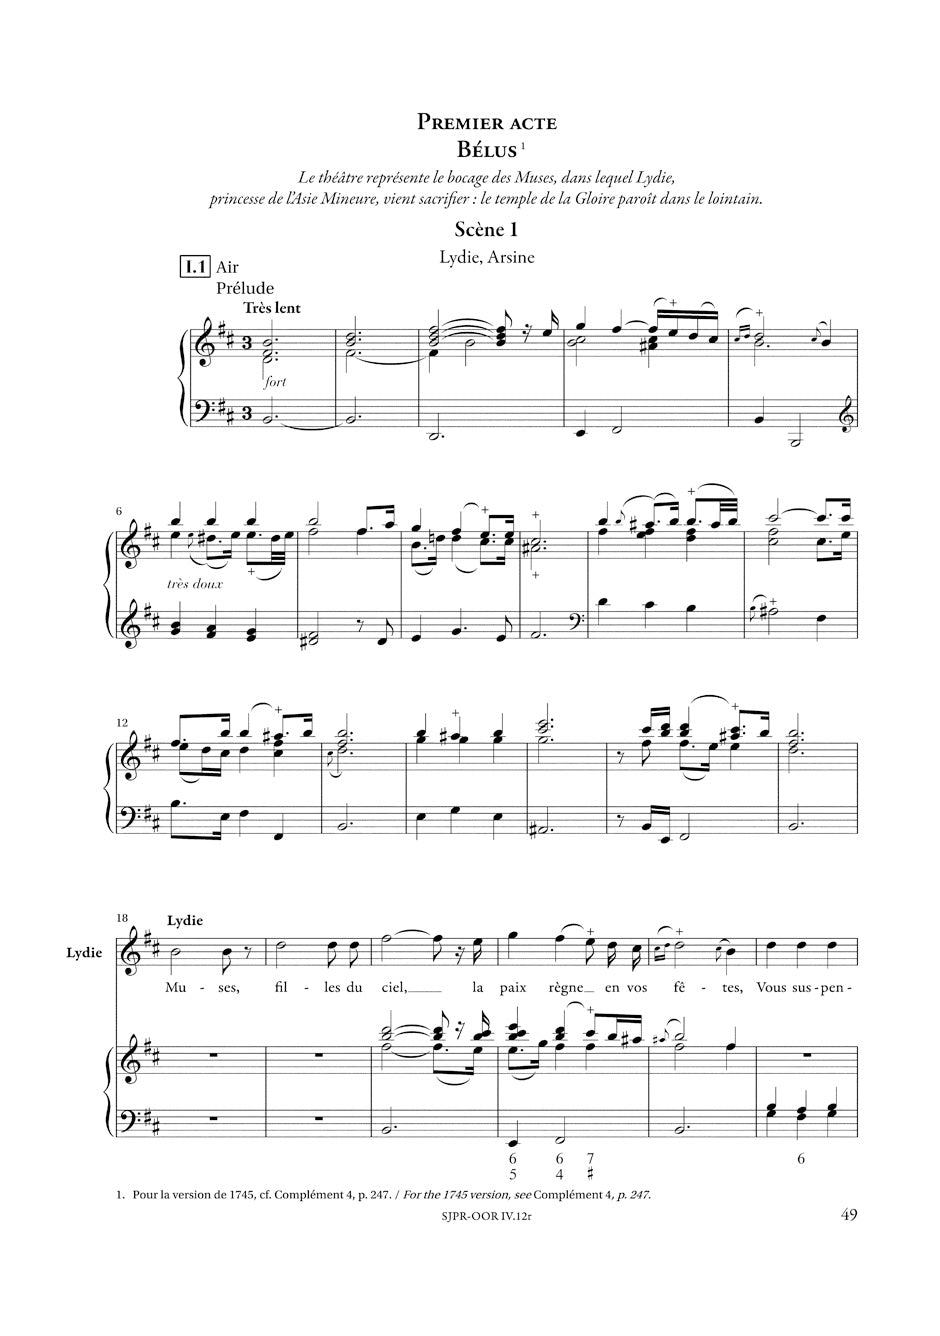 Rameau Le Temple de la Gloire  - Vocal Score